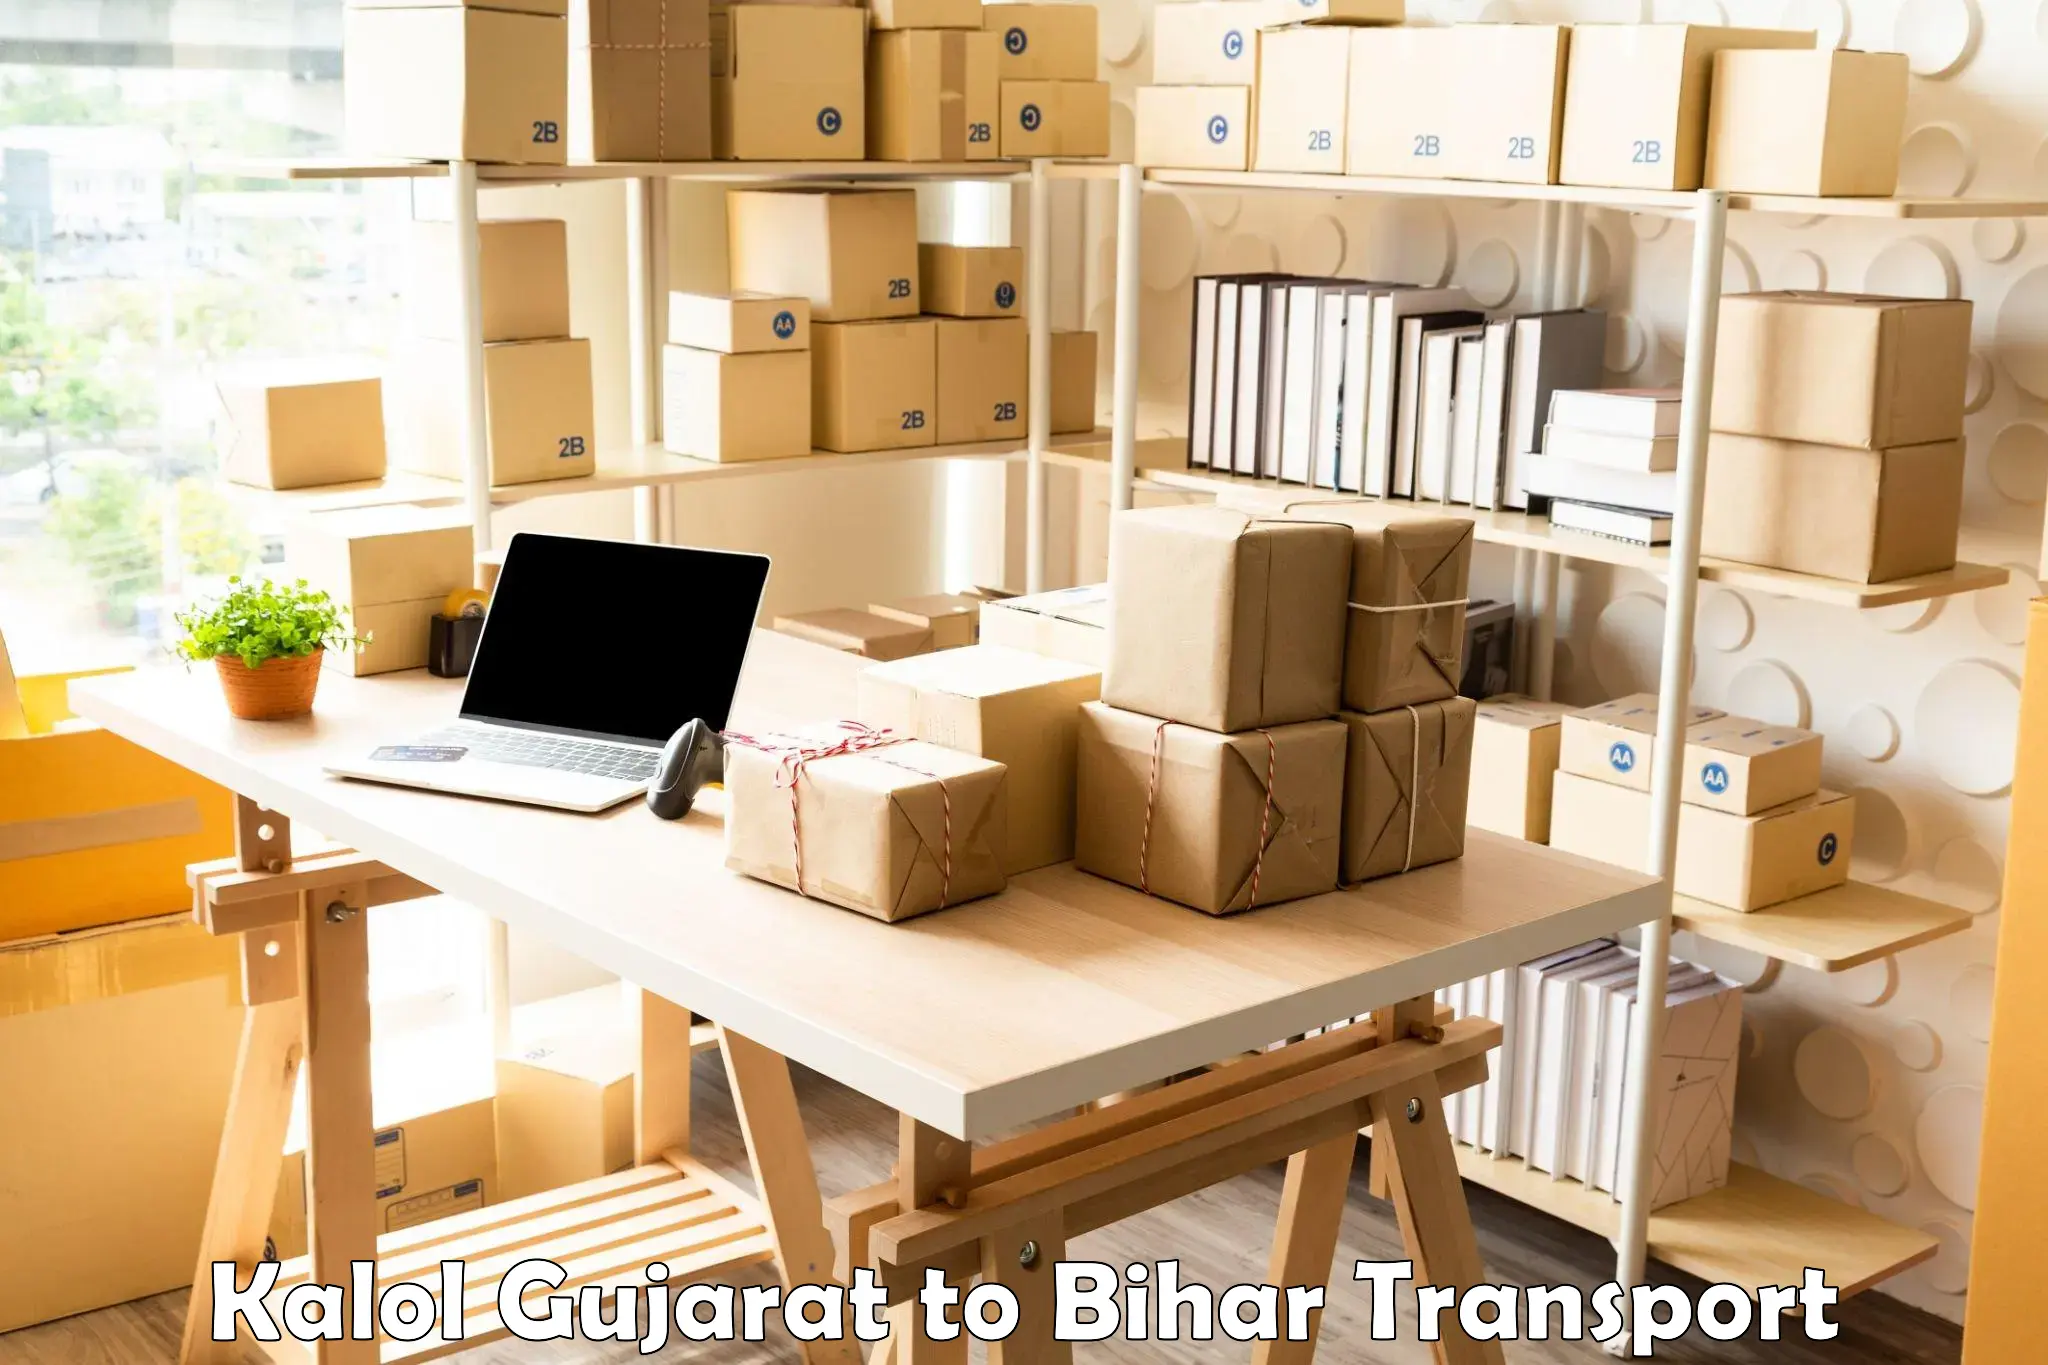 Cargo transport services Kalol Gujarat to Mirganj